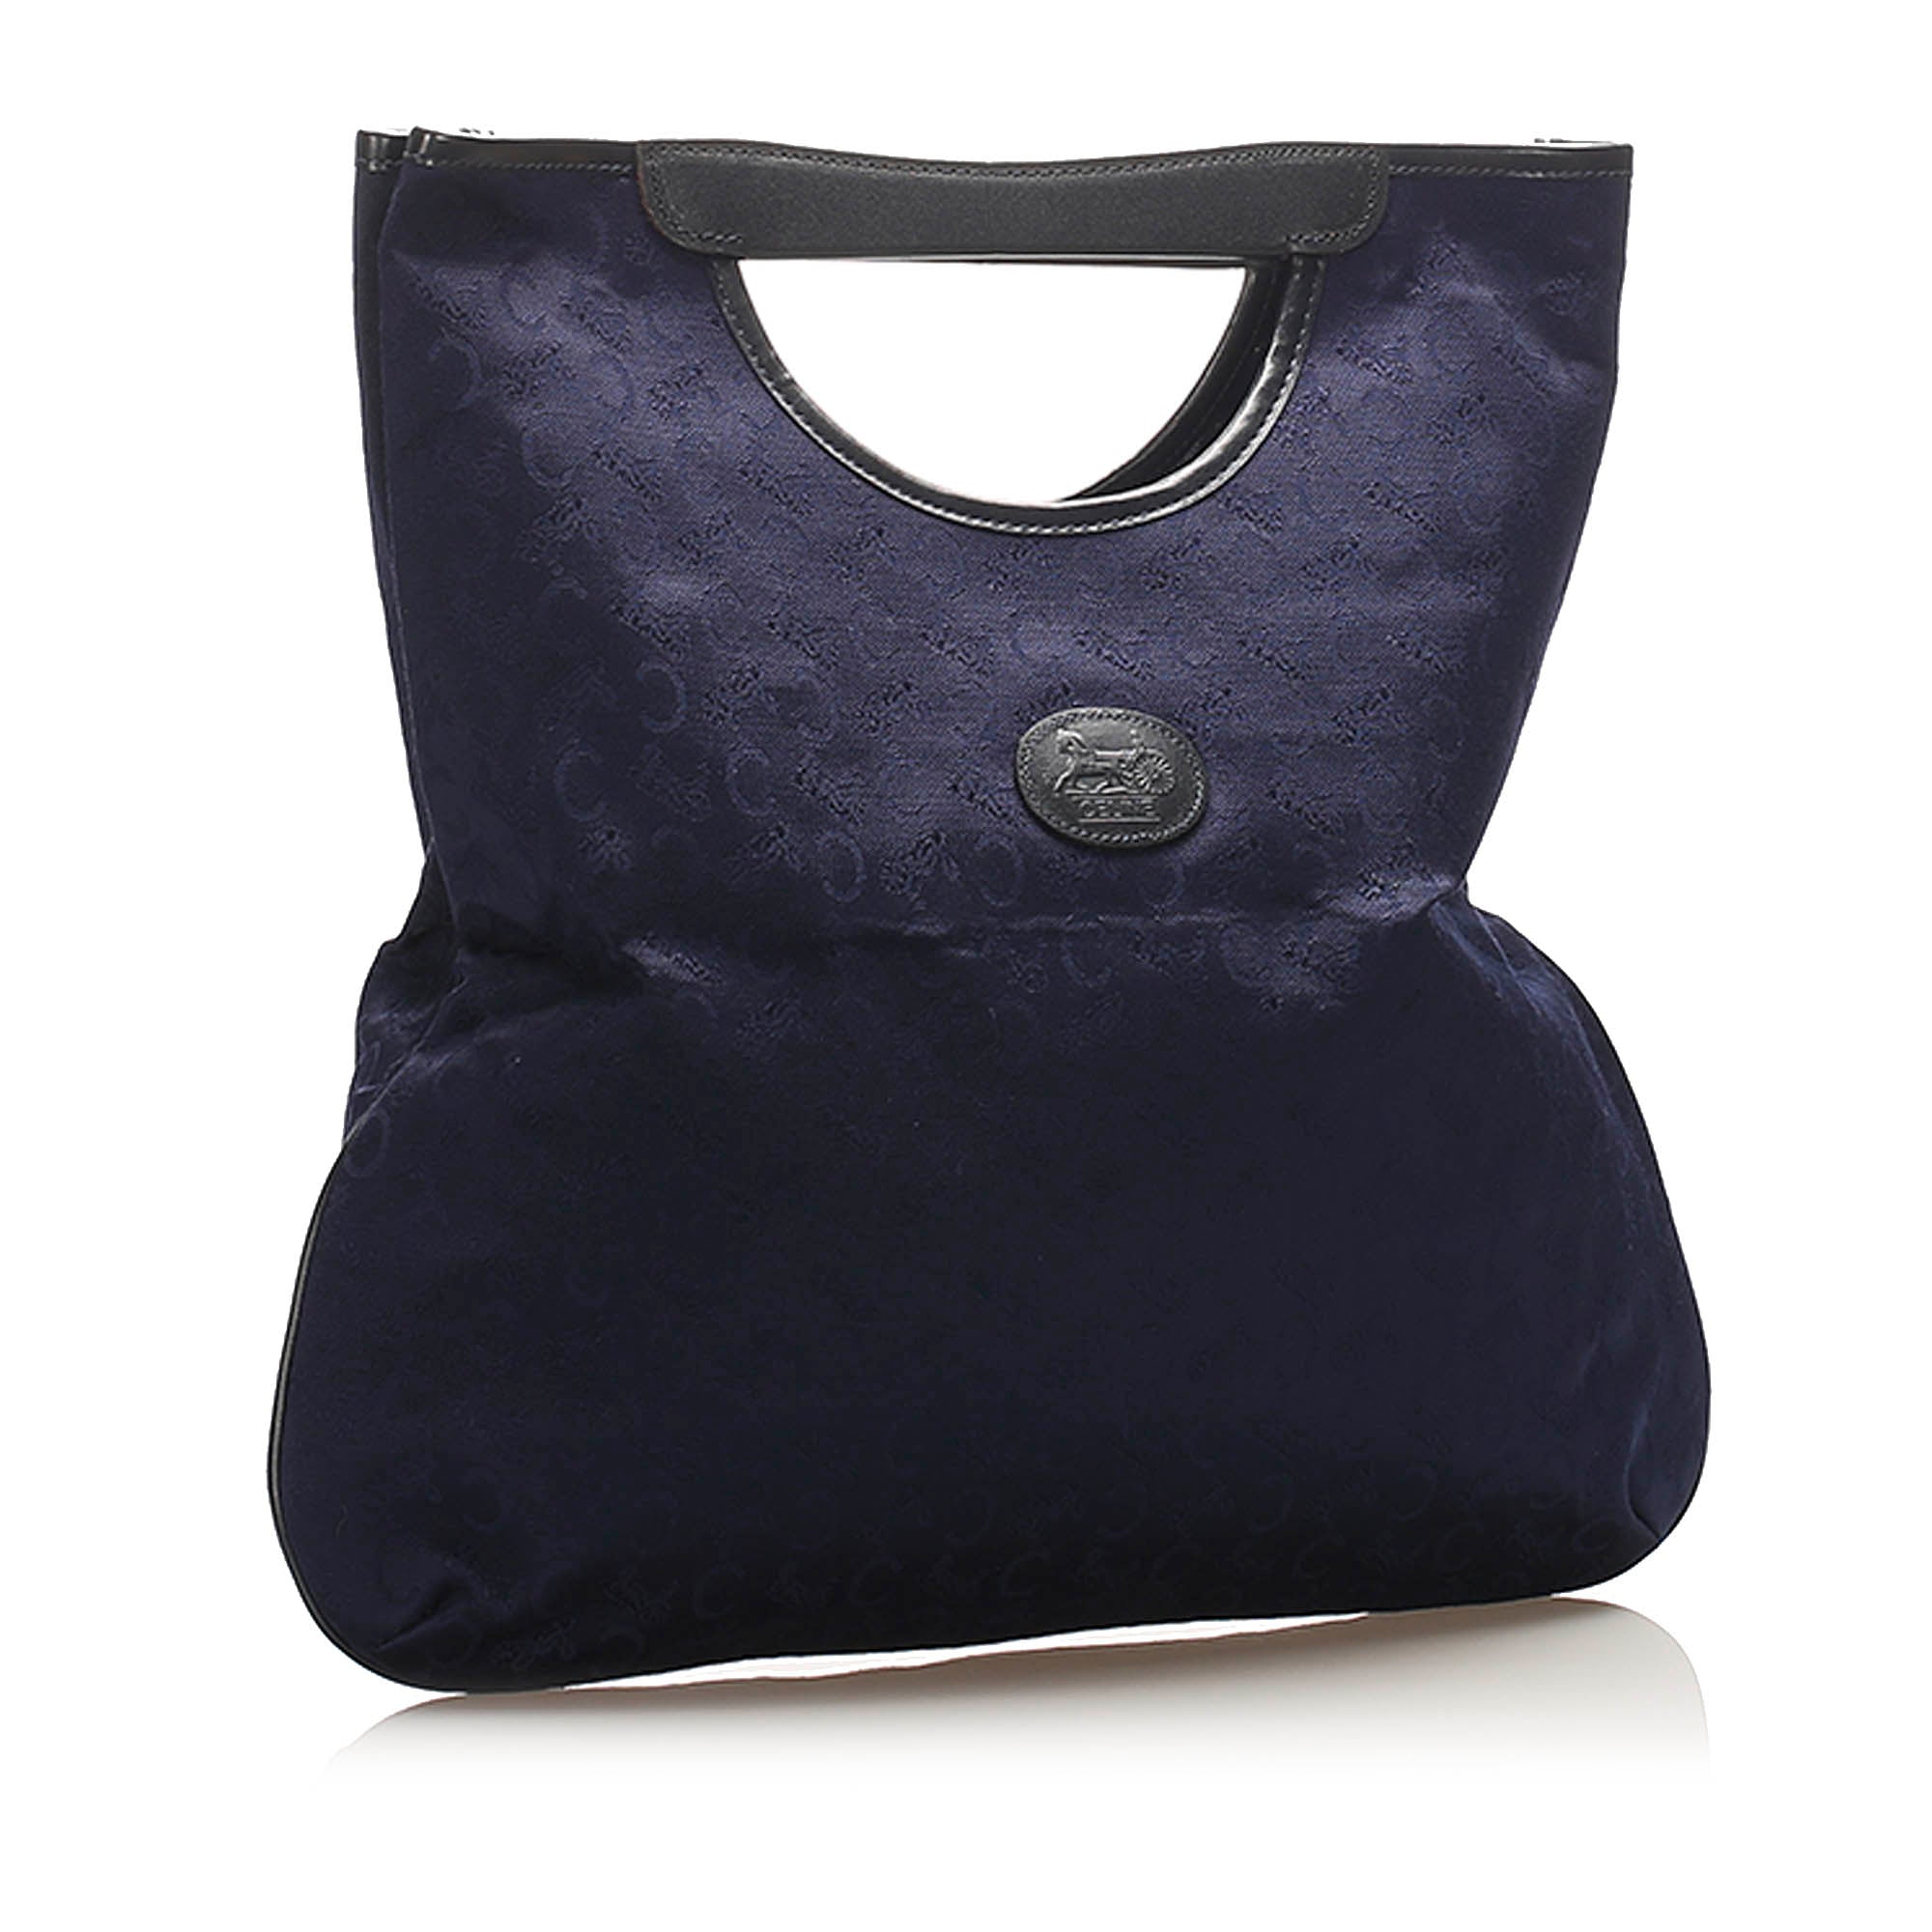 Celine Vintage Monogram Bag in Blue Black Canvas and Leather. 